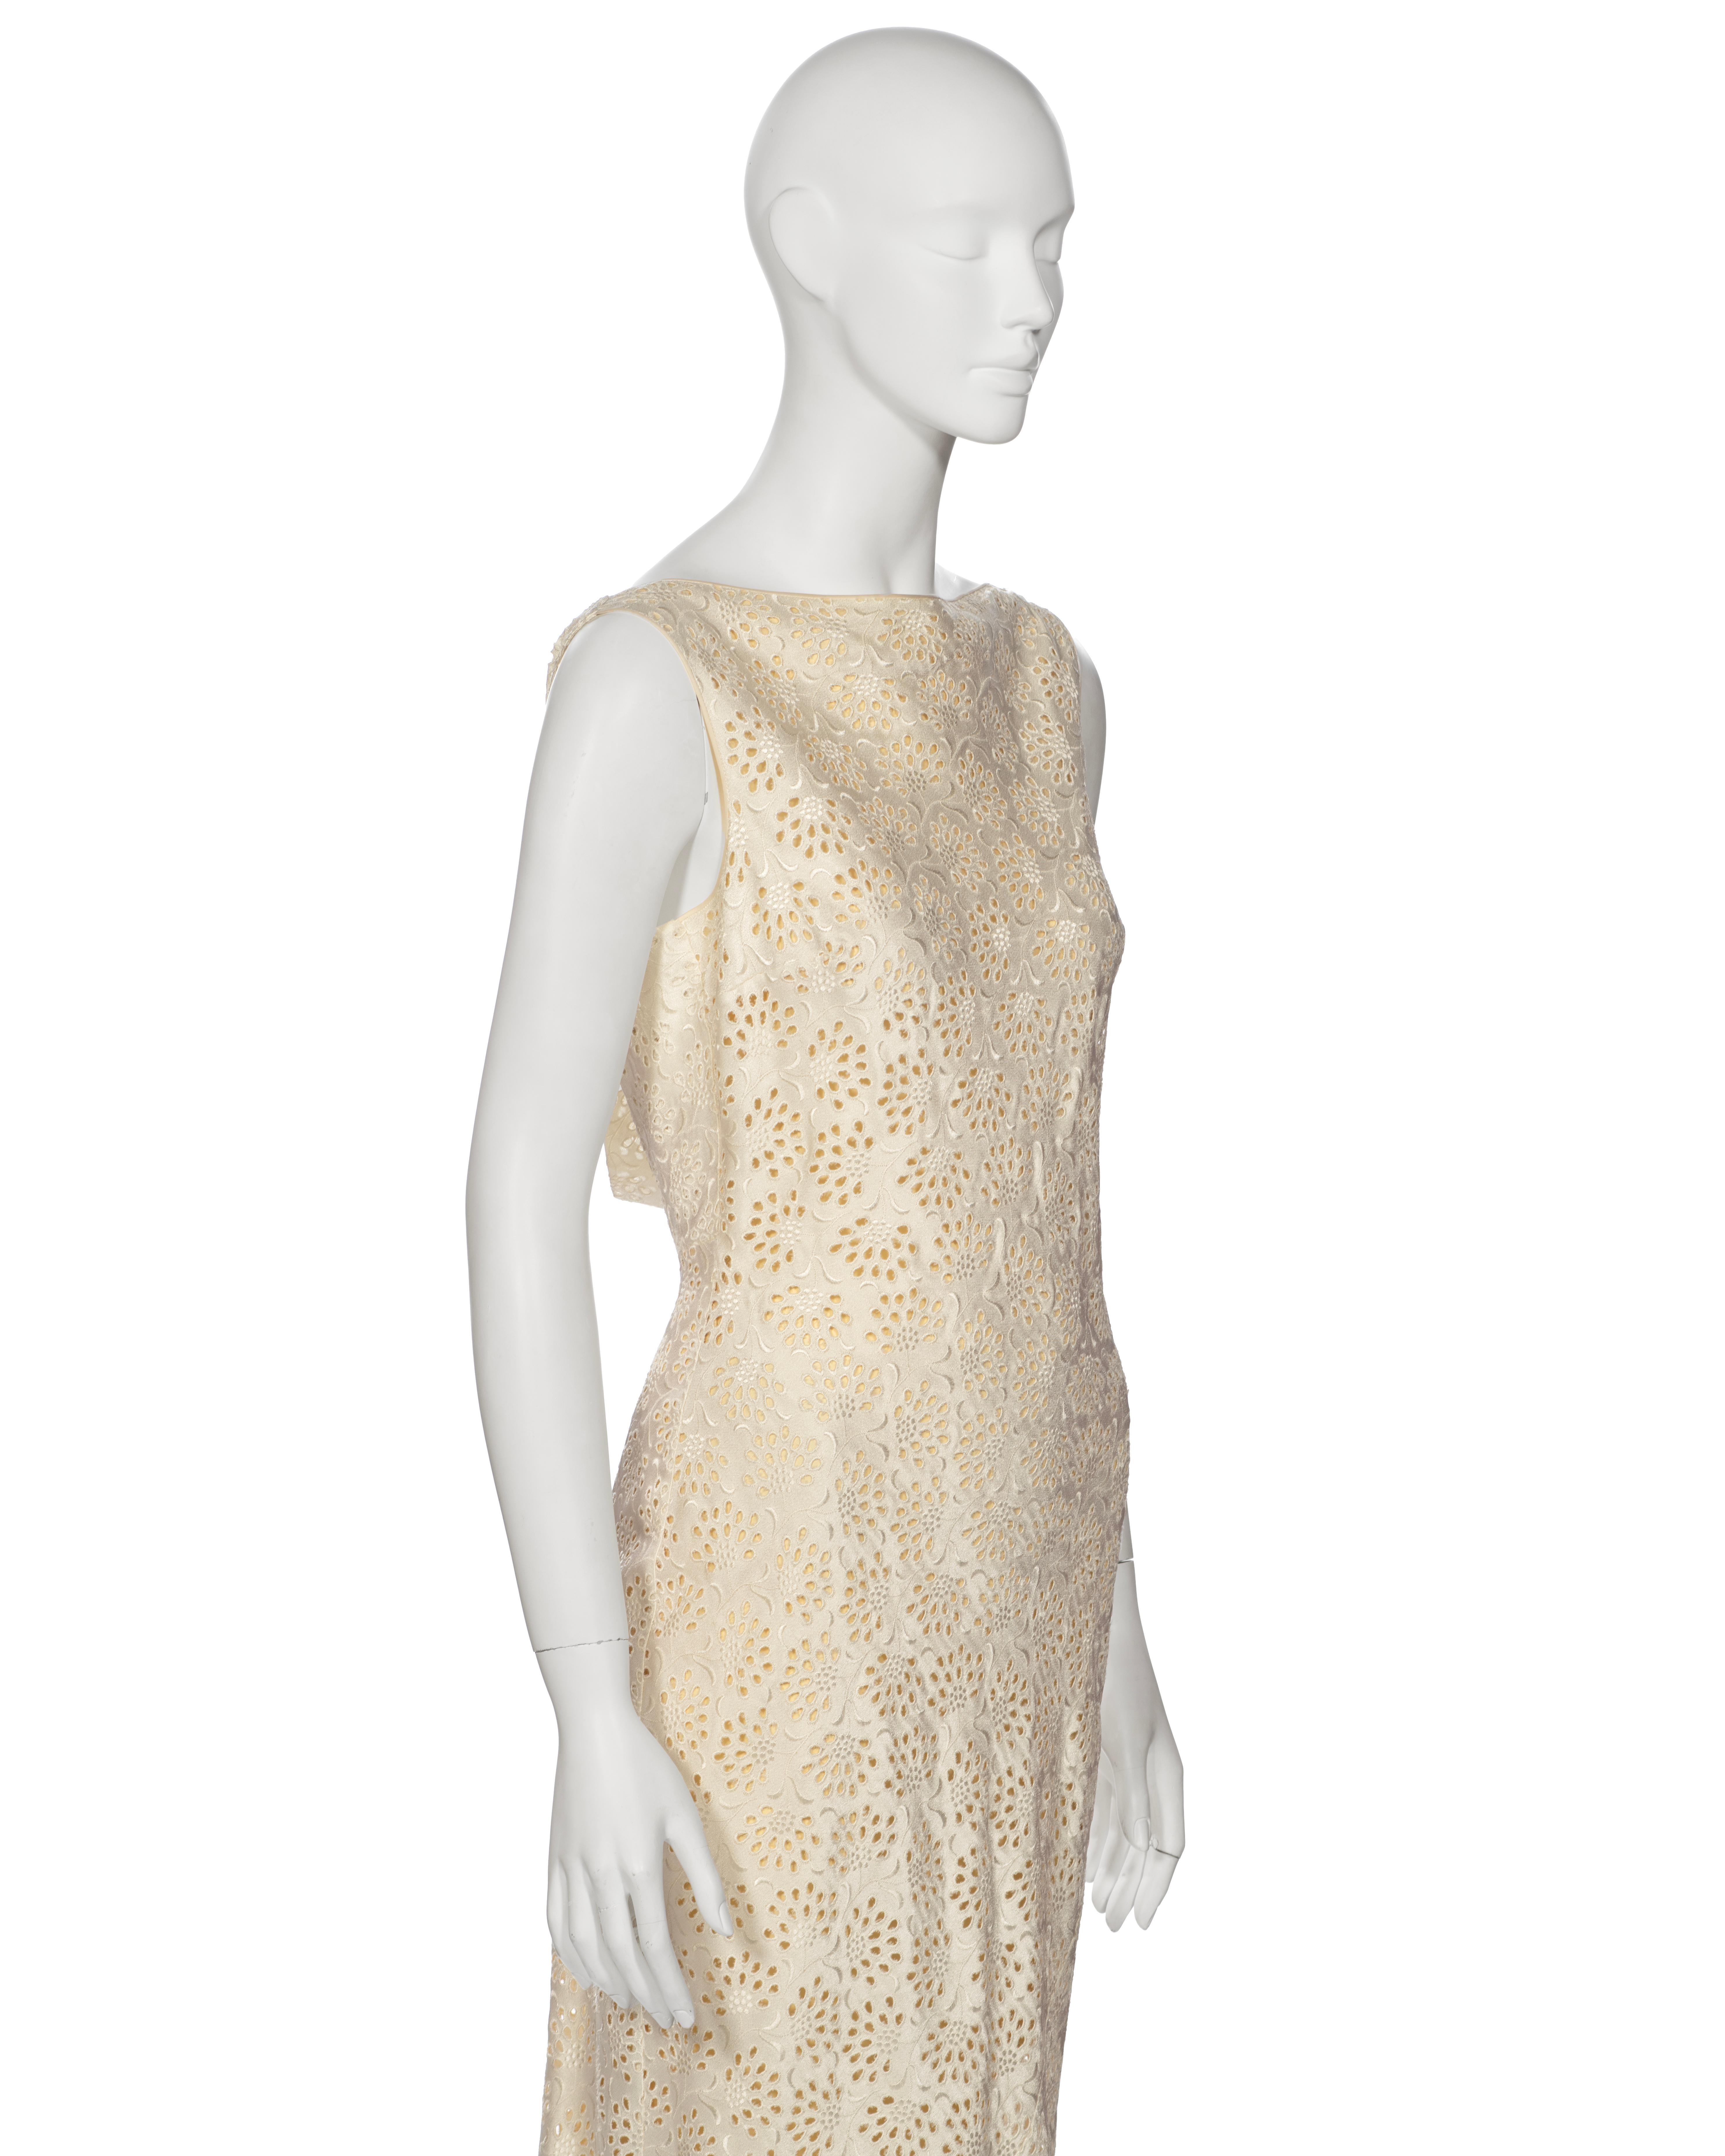 John Galliano 'L'Ecole de Danse' Ivory Satin Cutwork Formal Dress, ss 1996 For Sale 2